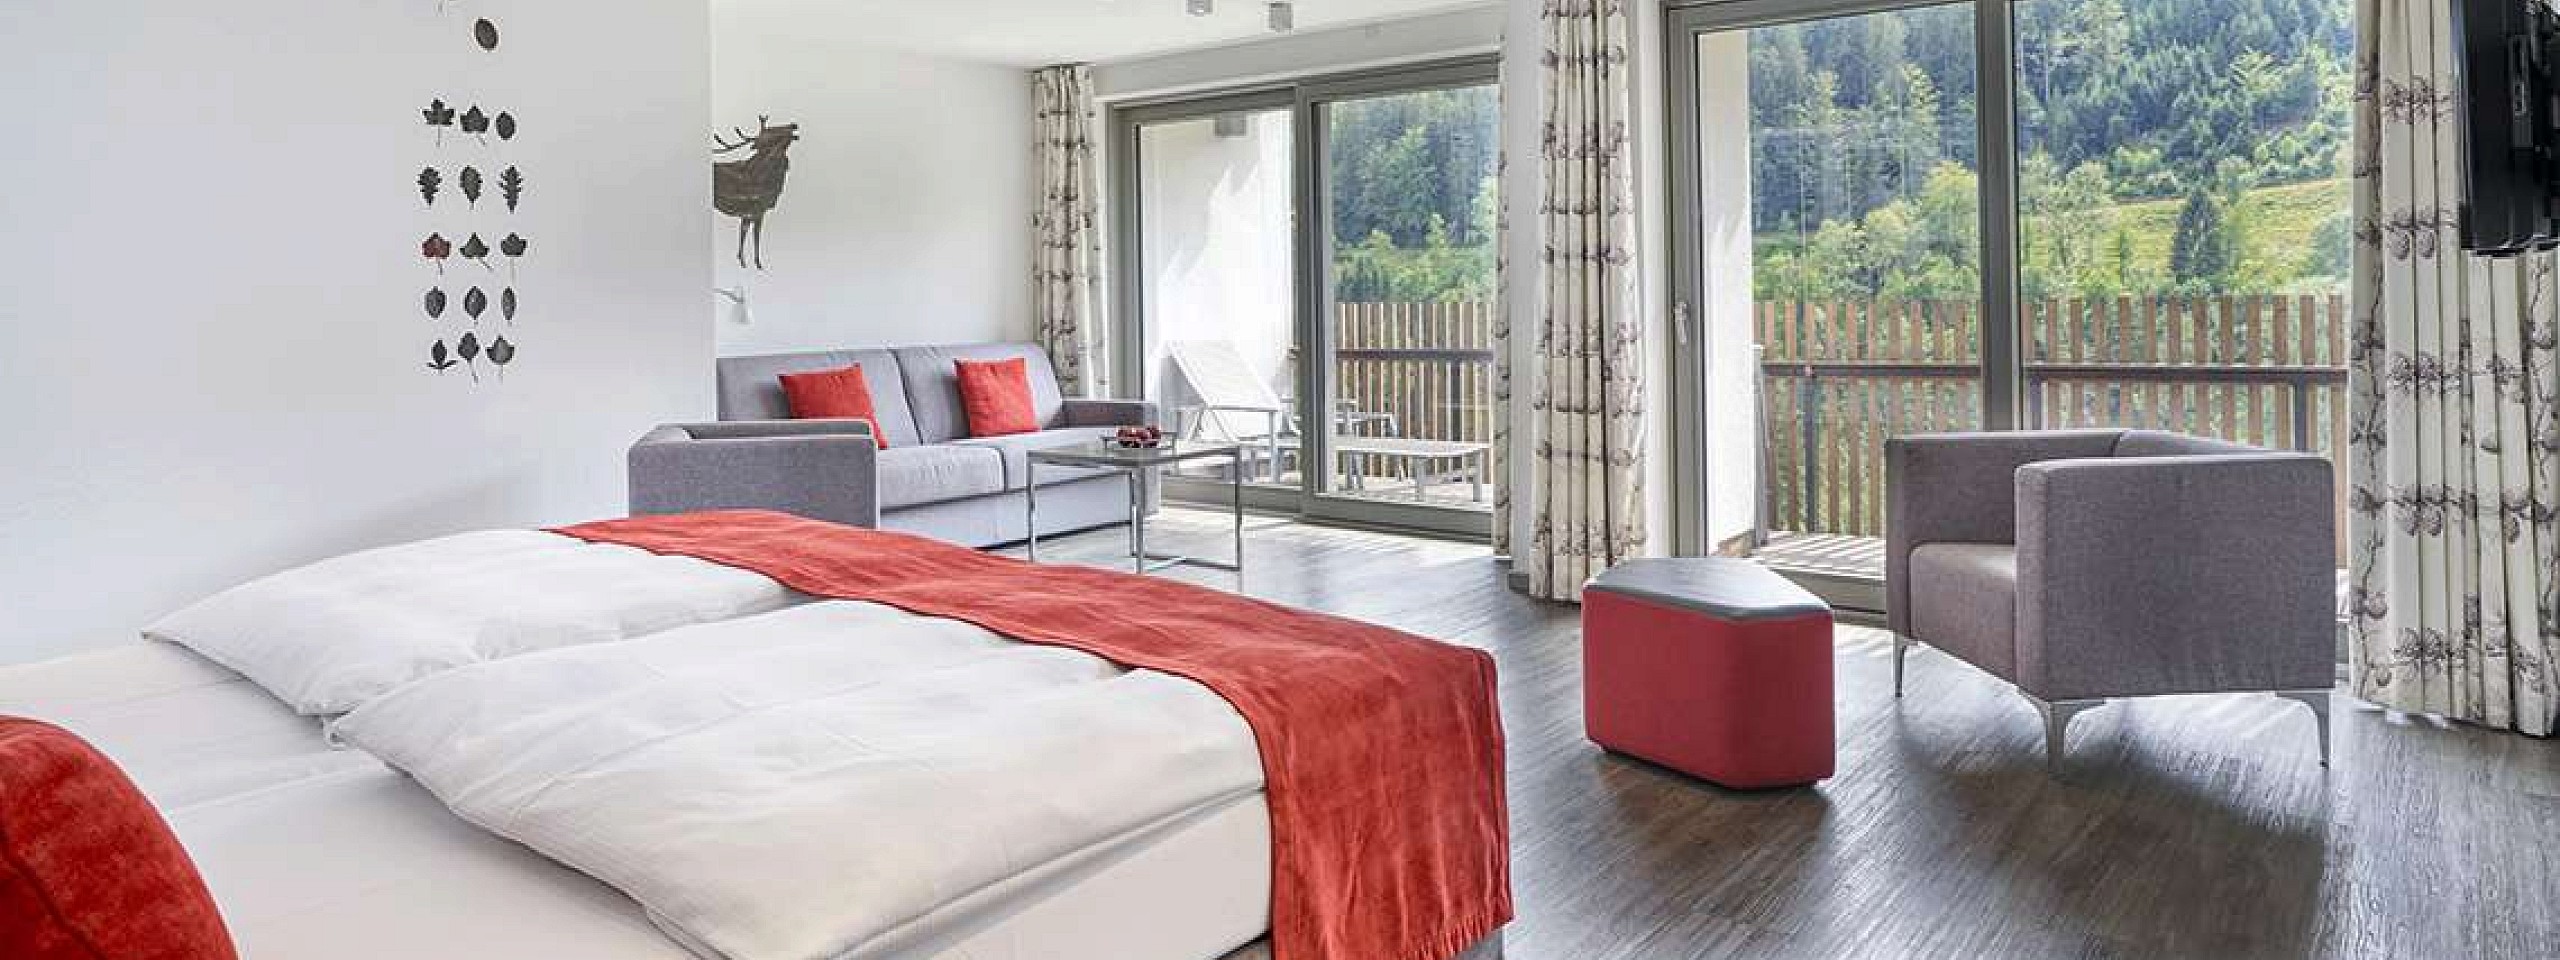 Bett mit zwei gepolsterten Stühlen sowie einem Schreibtischstuhl im Hotelzimmer im Schwarzwald.